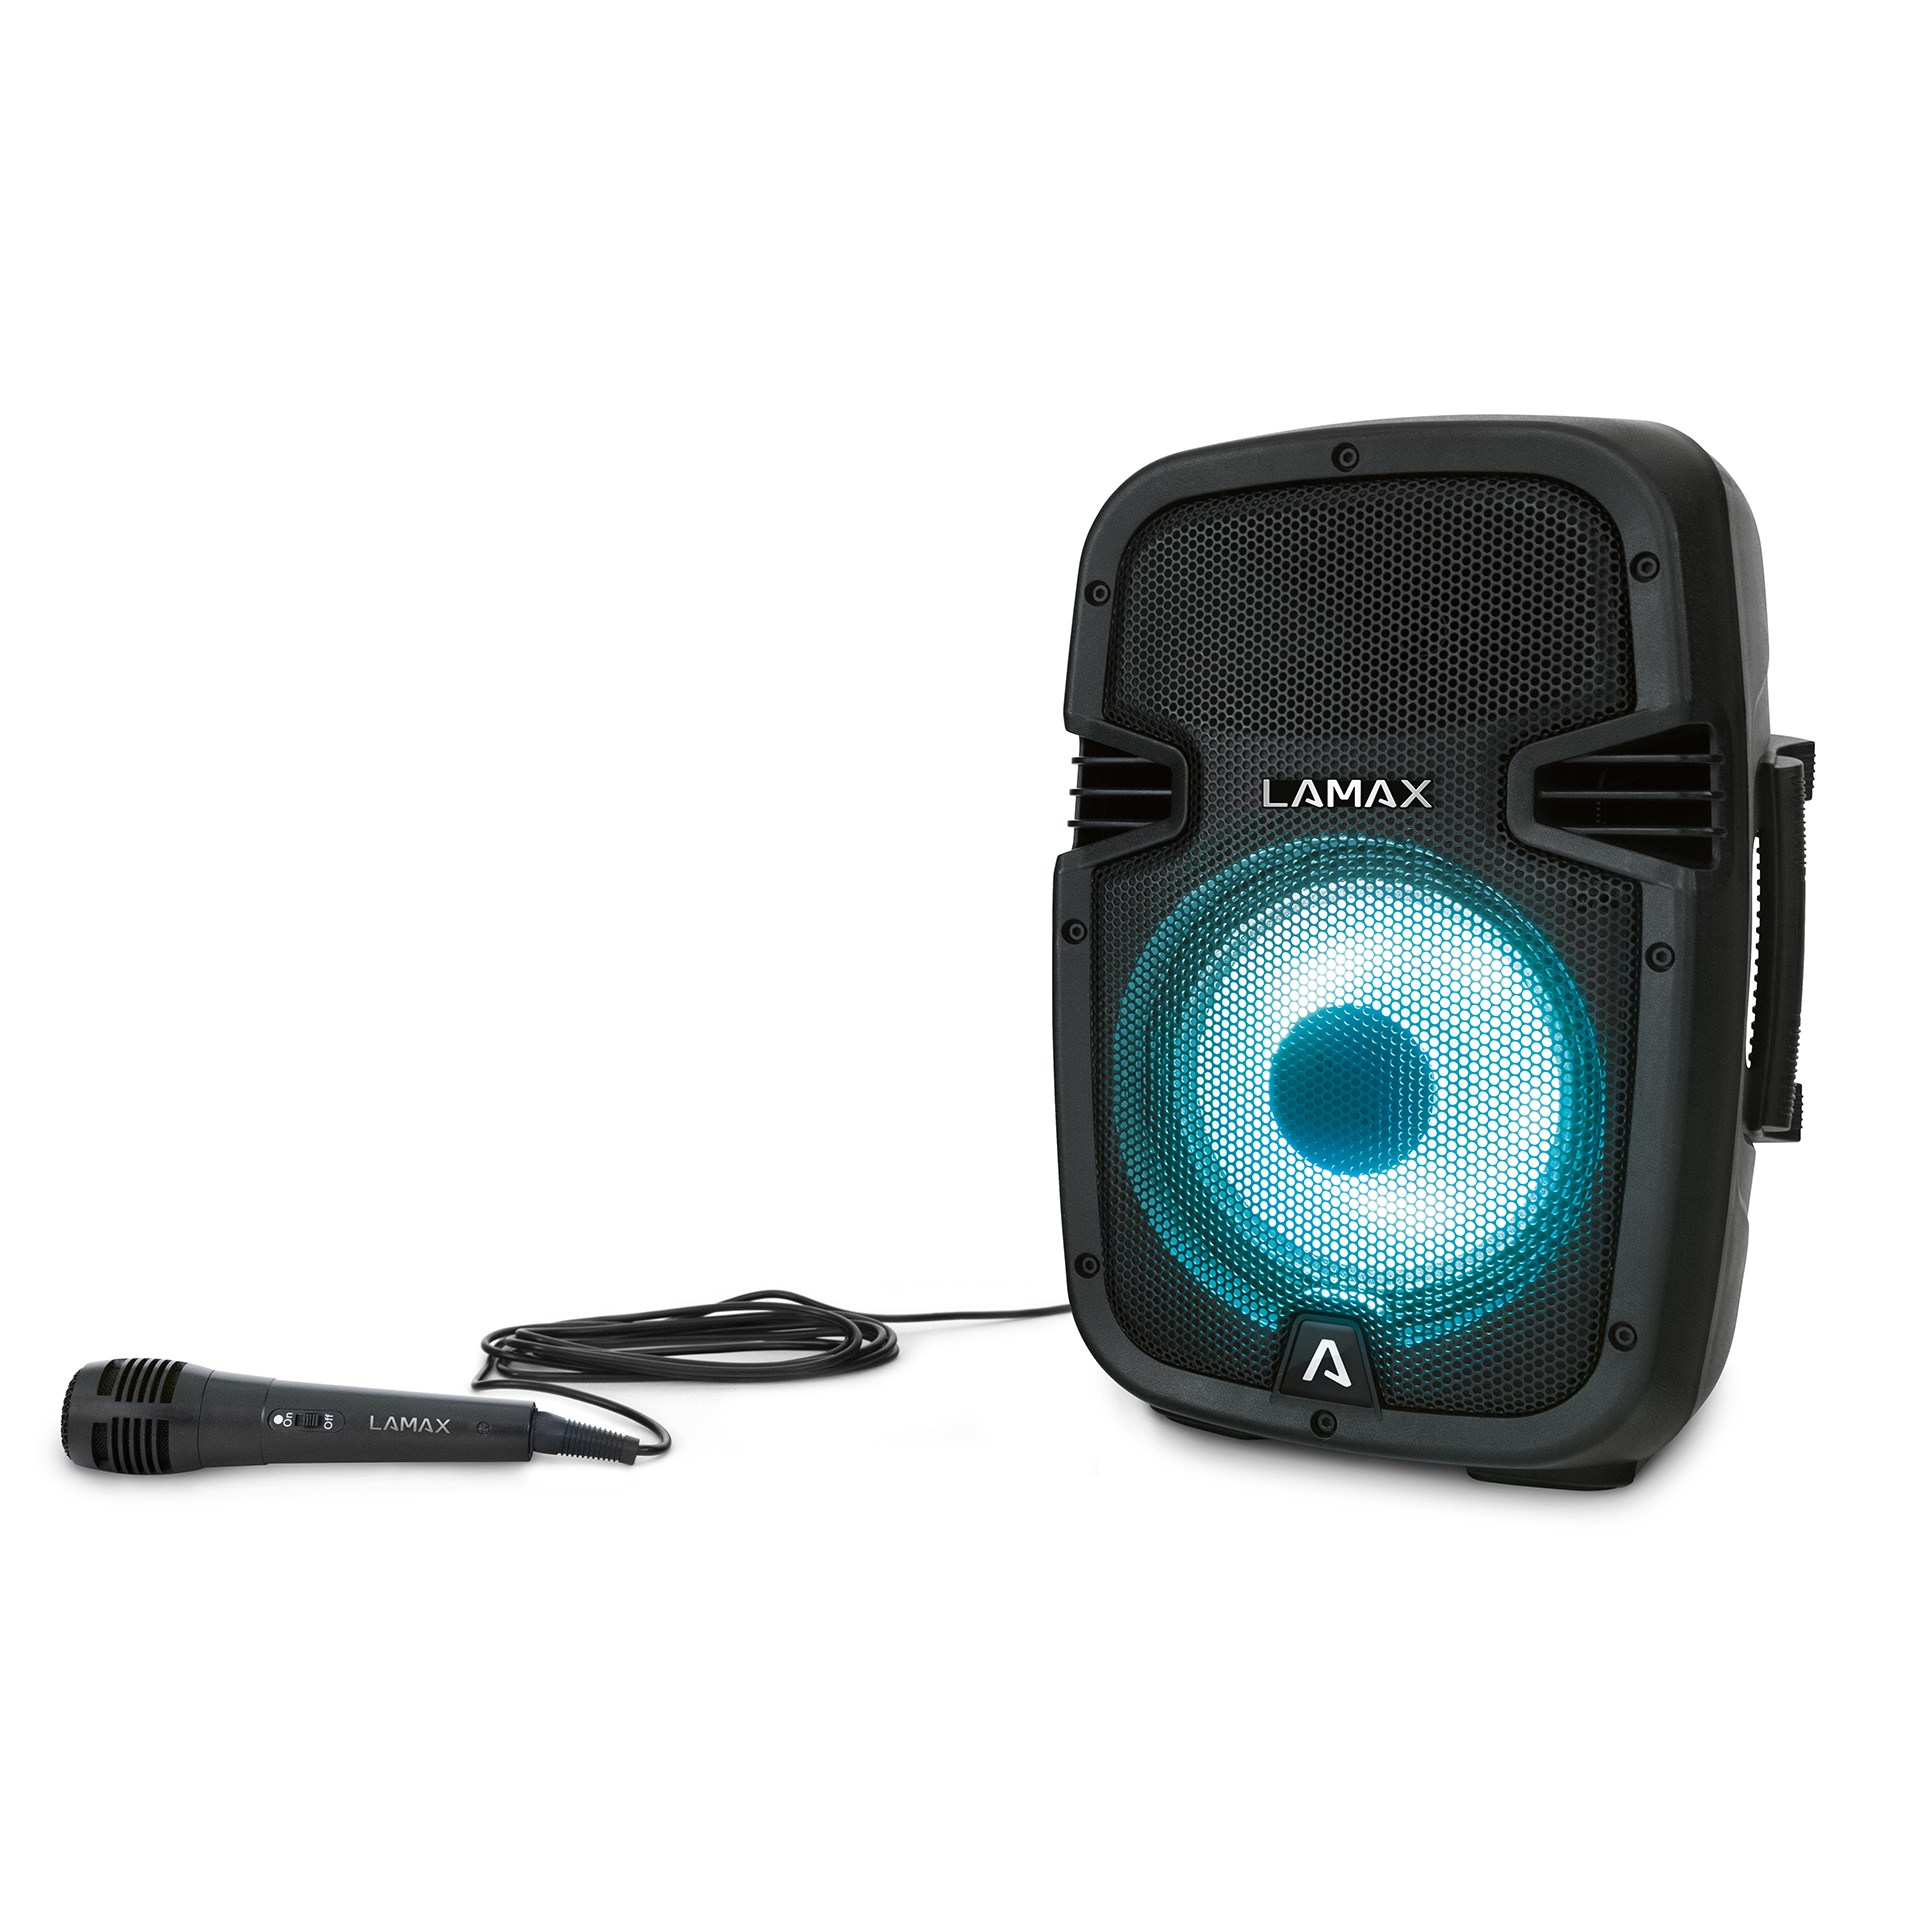 schwarz LAMAX Bluetooth-Lautsprecher, PartyBoomBox300